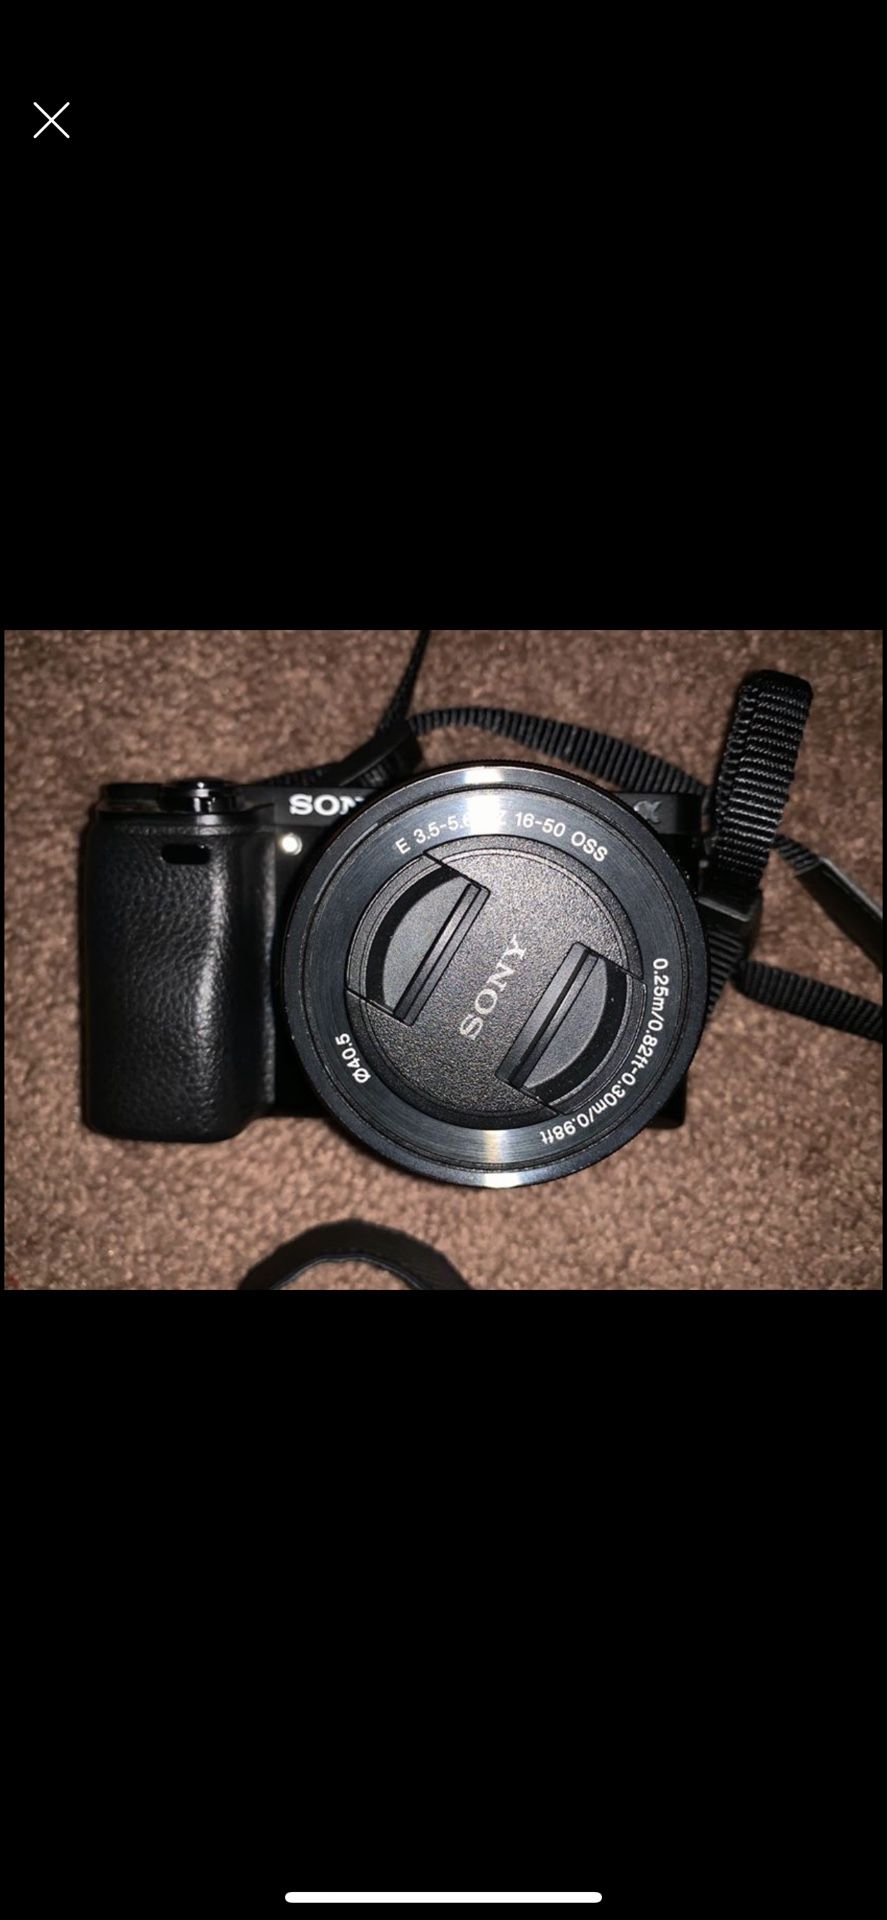 Sony A6000 camera + lens